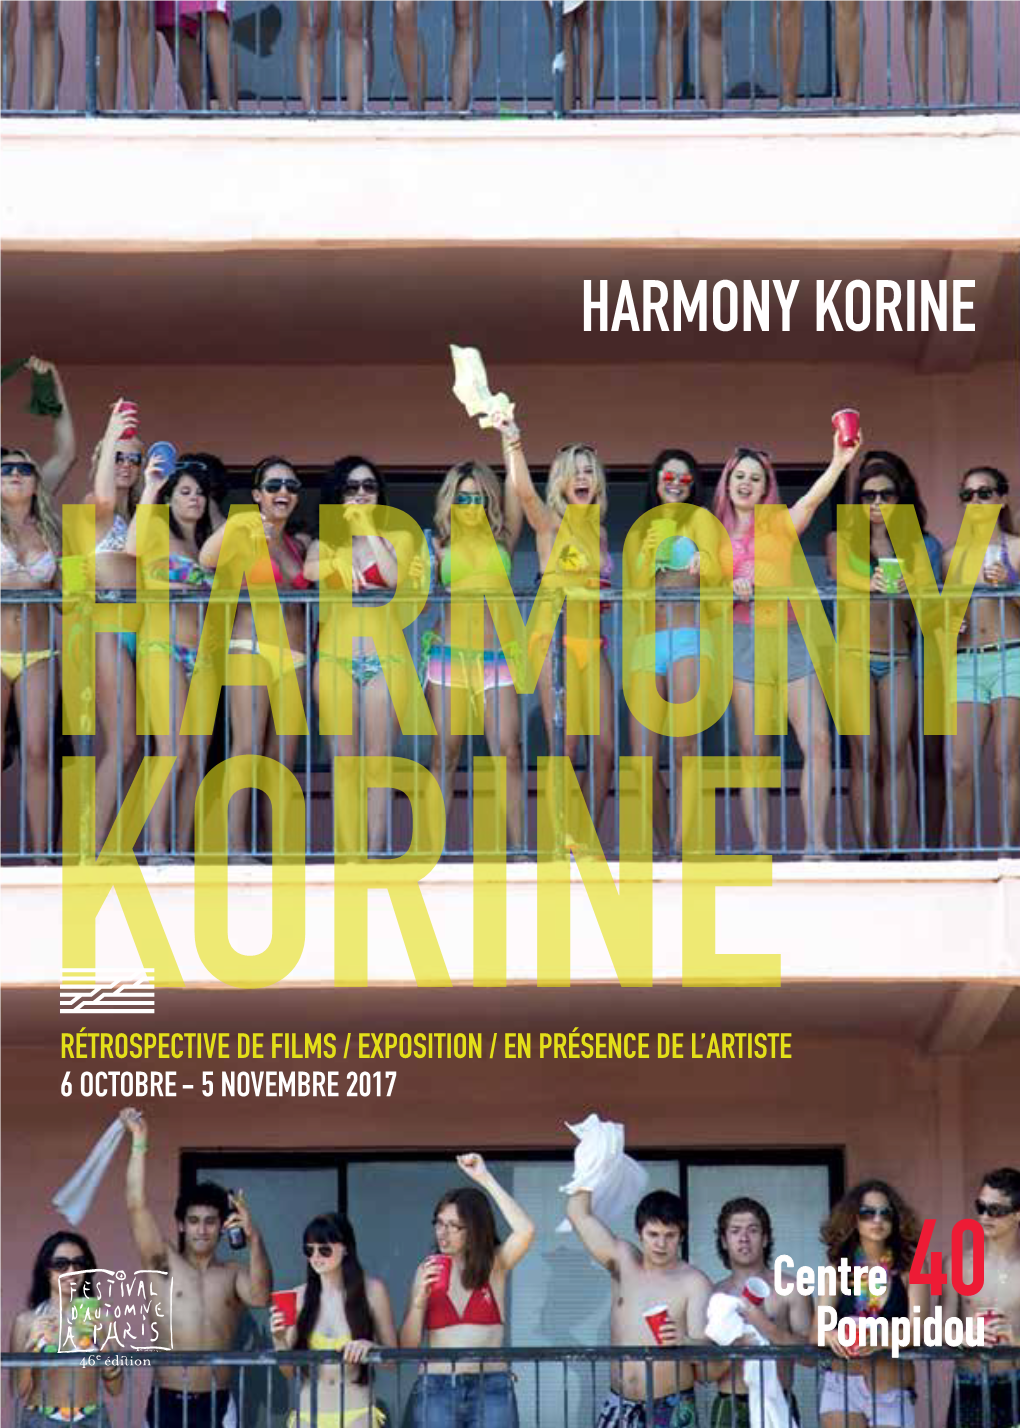 Harmony Korine Harmony